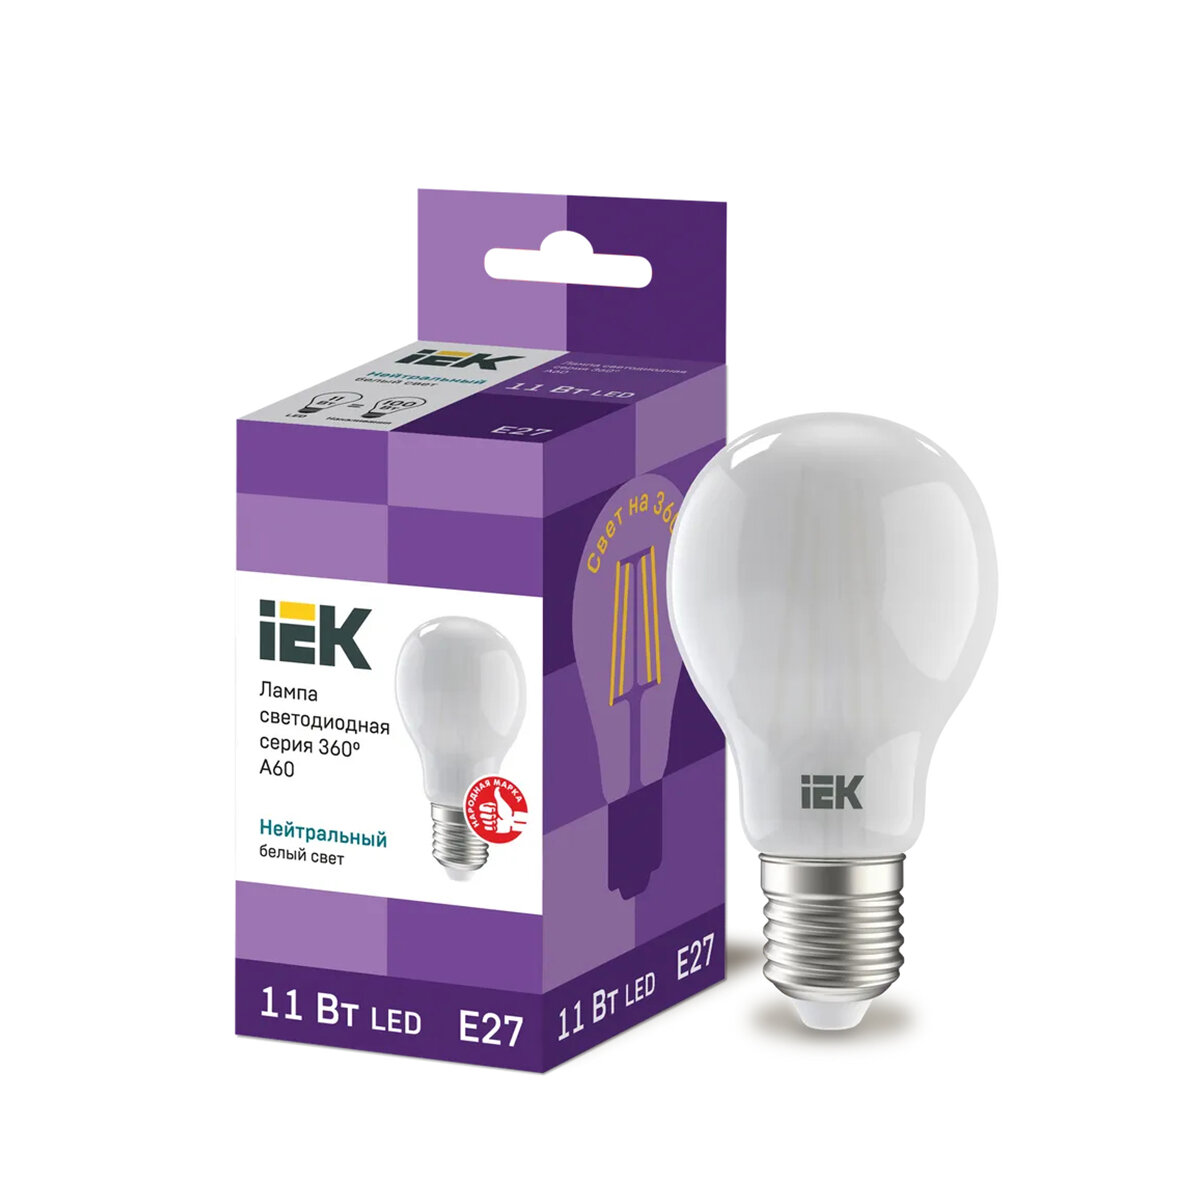 Лампа светодиодная LED IEK Шар матовый, серия 360°, E27, A60, 11 Вт, 4000 K, нейтральный свет